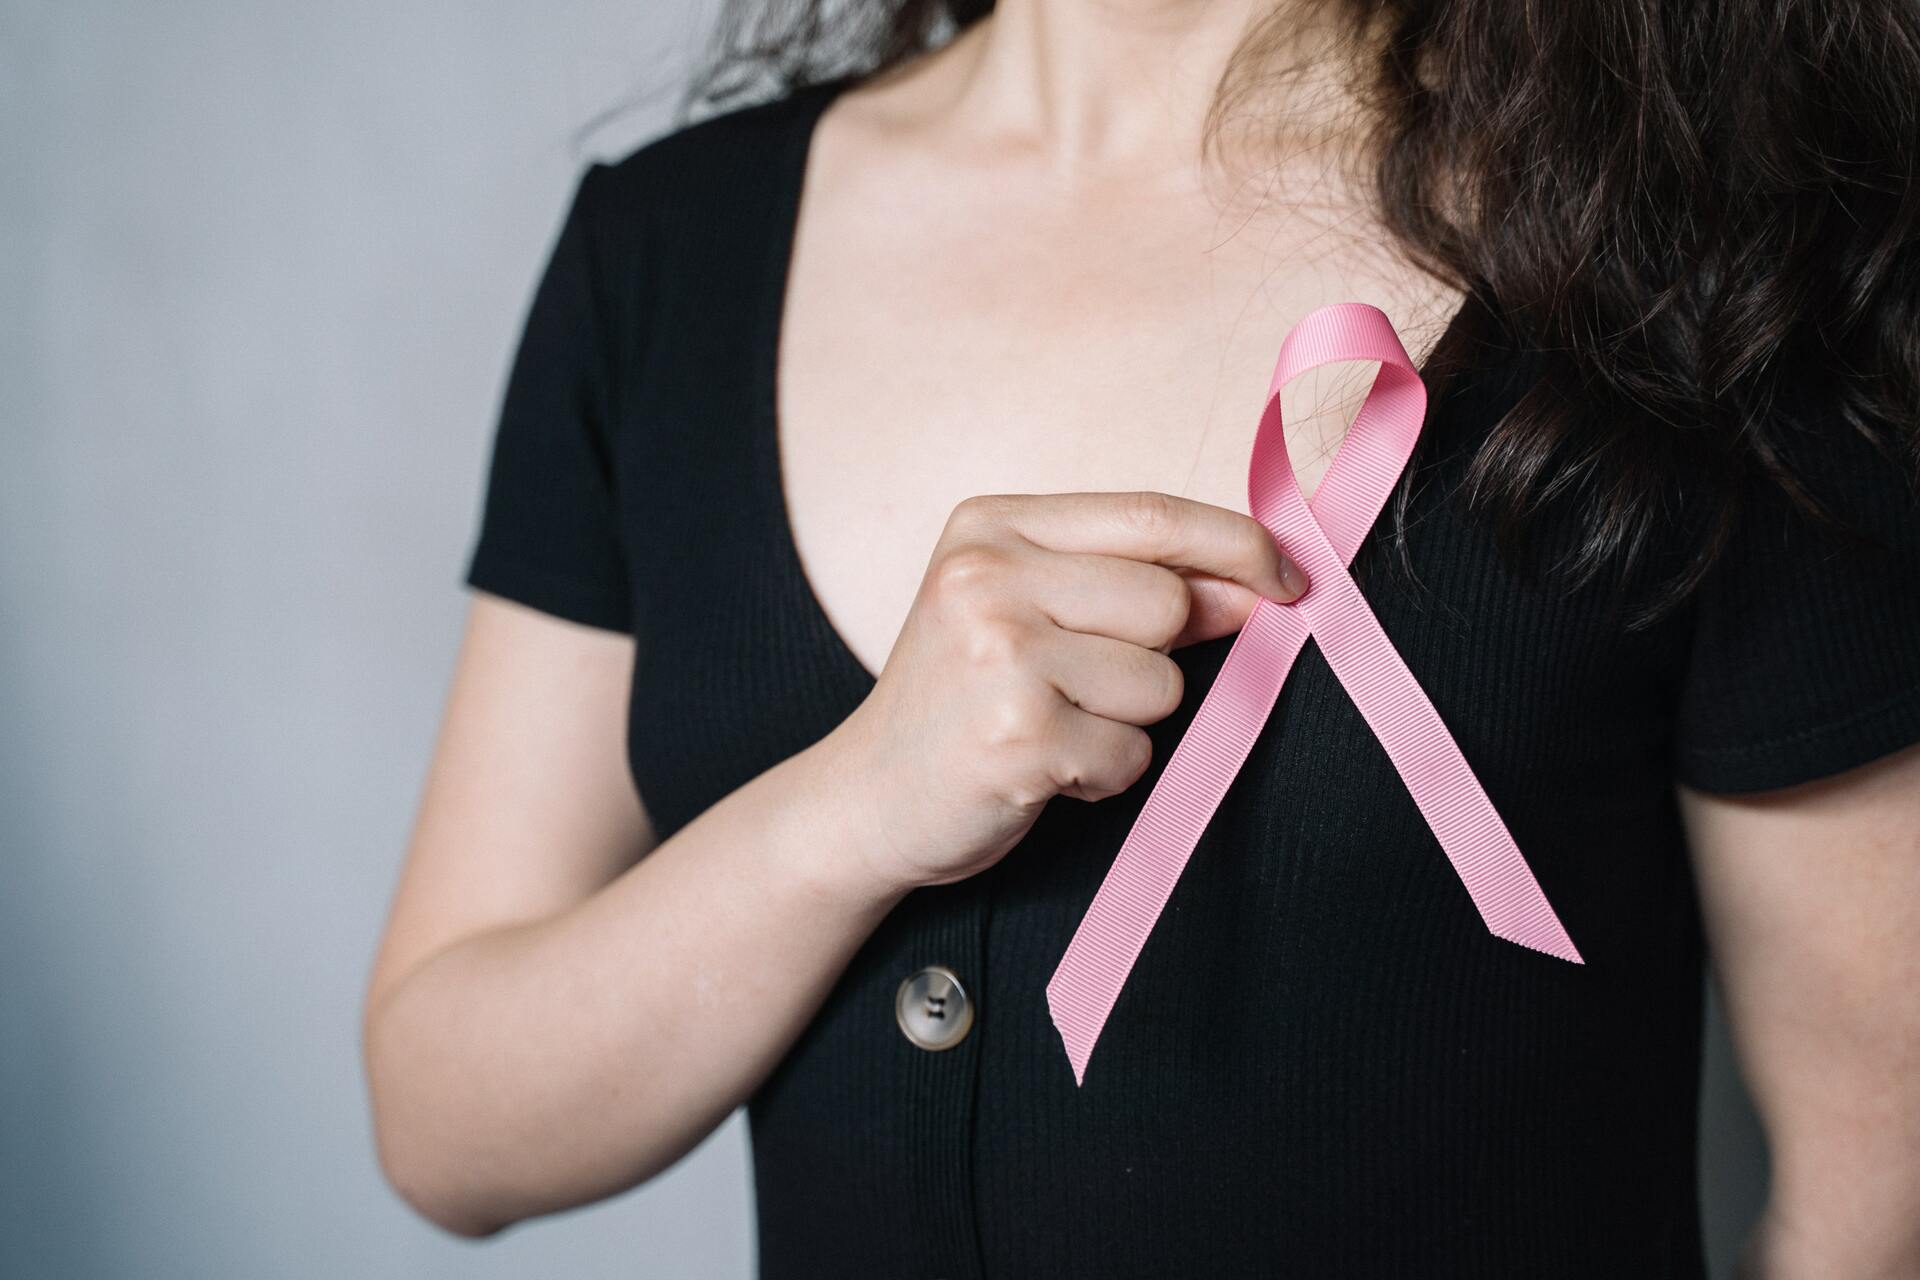 La herramienta evalúa el tejido del cáncer de mama a través de imágenes digitales que ofrecen un enorme detalle del aspecto que presentan las células cancerosas y no cancerosas.